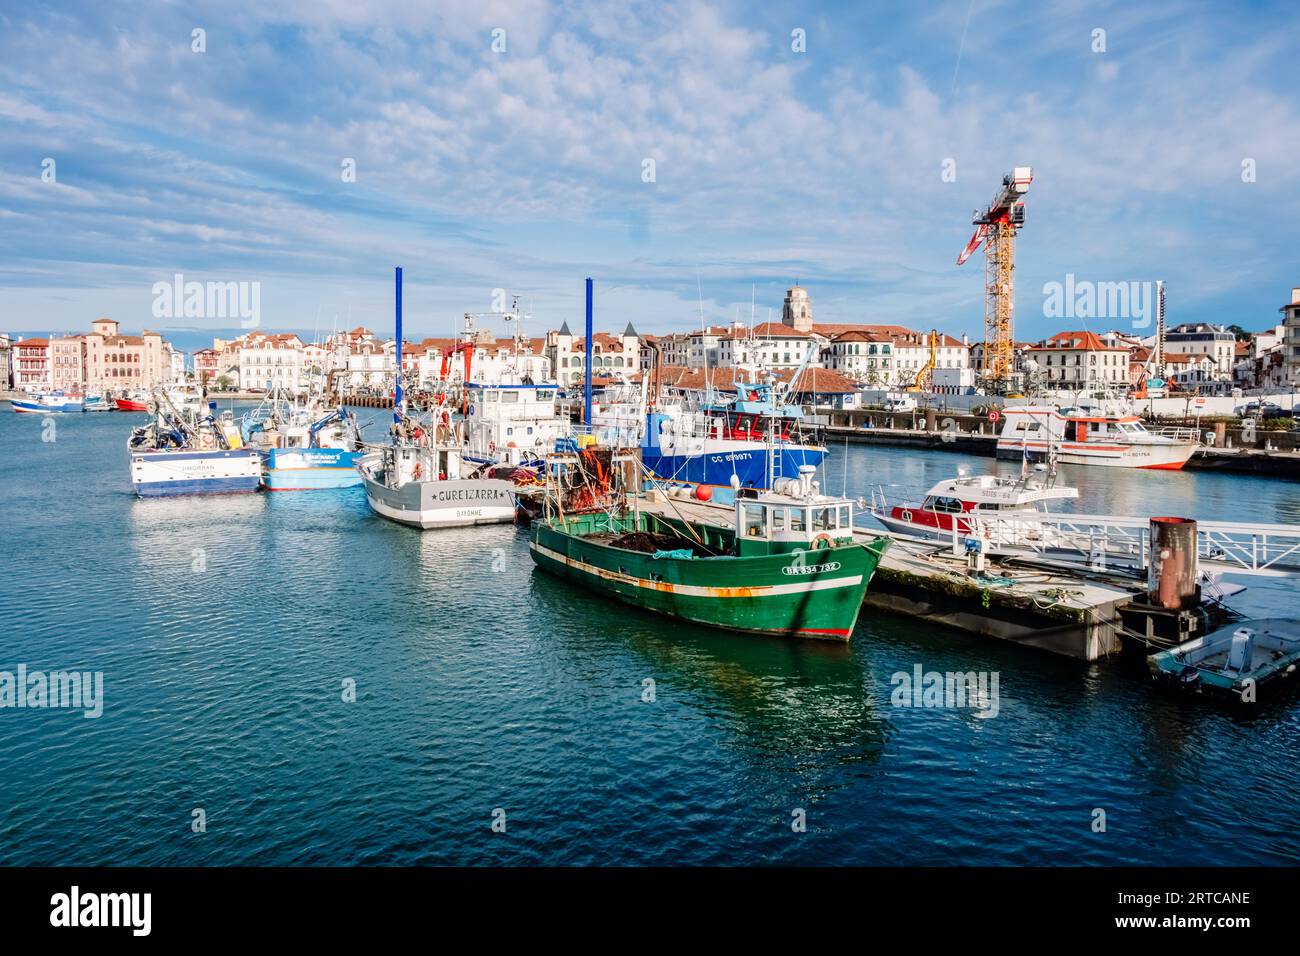 Saint Jean de Luz, Frankreich - 29. Dezember 2022: Fischereihafen mit festgemachten Fischerbooten ein ruhiger, sonniger Tag in Saint-Jean-de-Luz, Frankreich. Stockfoto